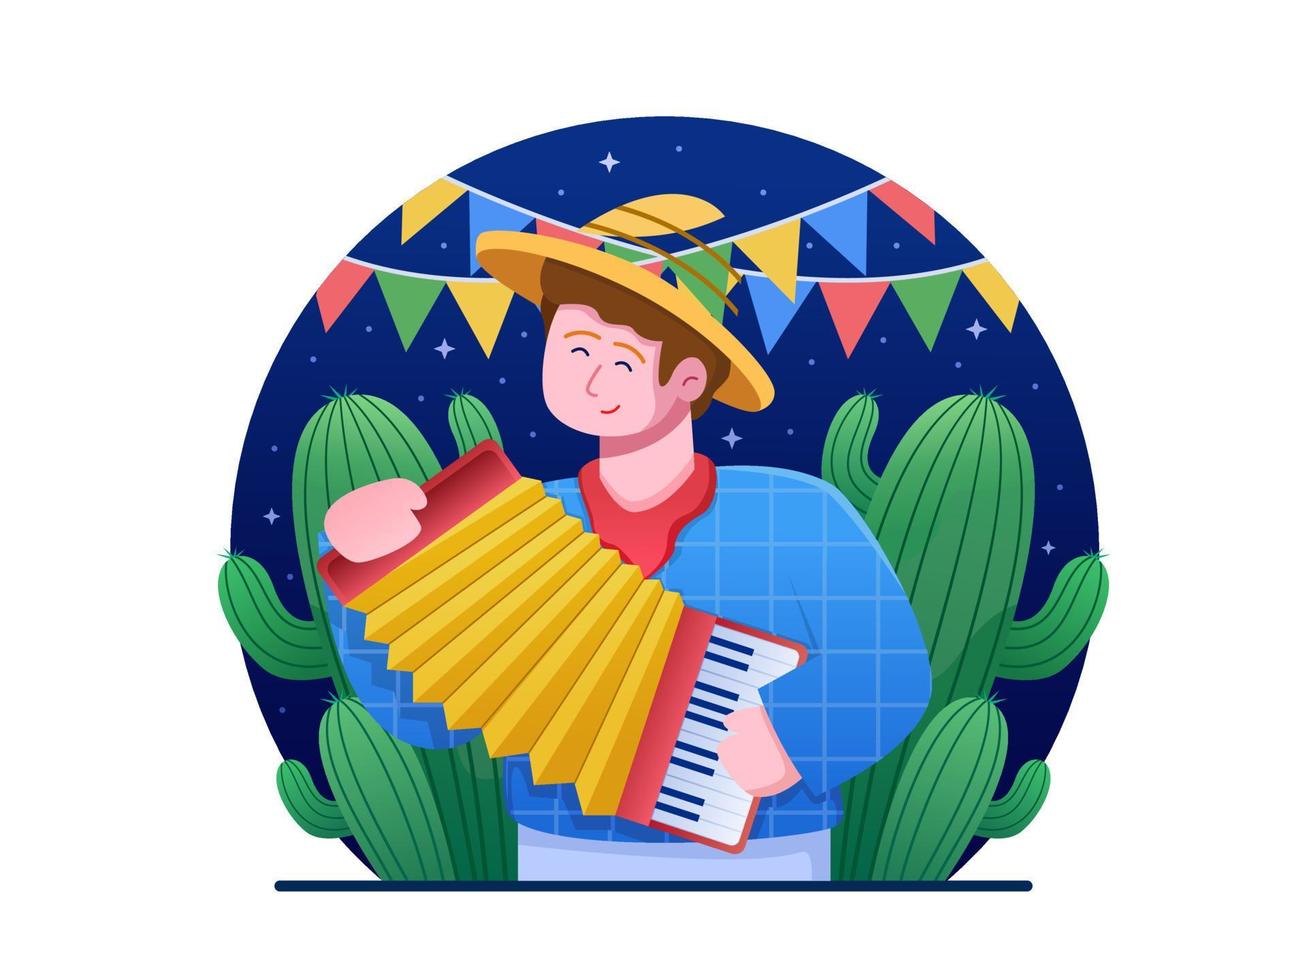 illustrazione vettore di persone che suonano una fisarmonica per celebrare la festa junina. può essere utilizzato per biglietti di auguri, cartoline, stampa, web, social media, progetti personali, ecc